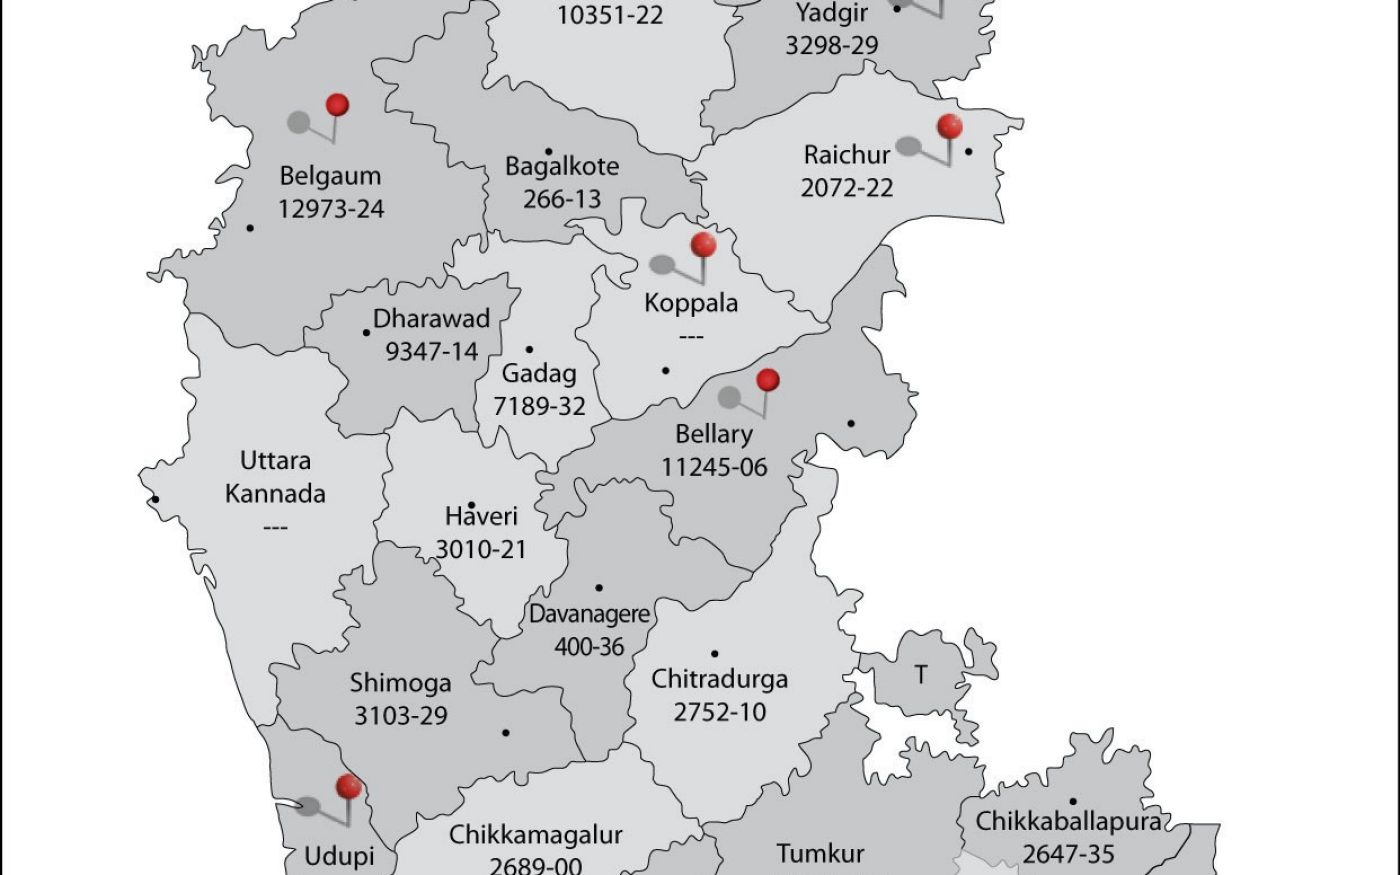 1911595d1688403869t-delhi-agra-bangalore-route-queries-map.jpg